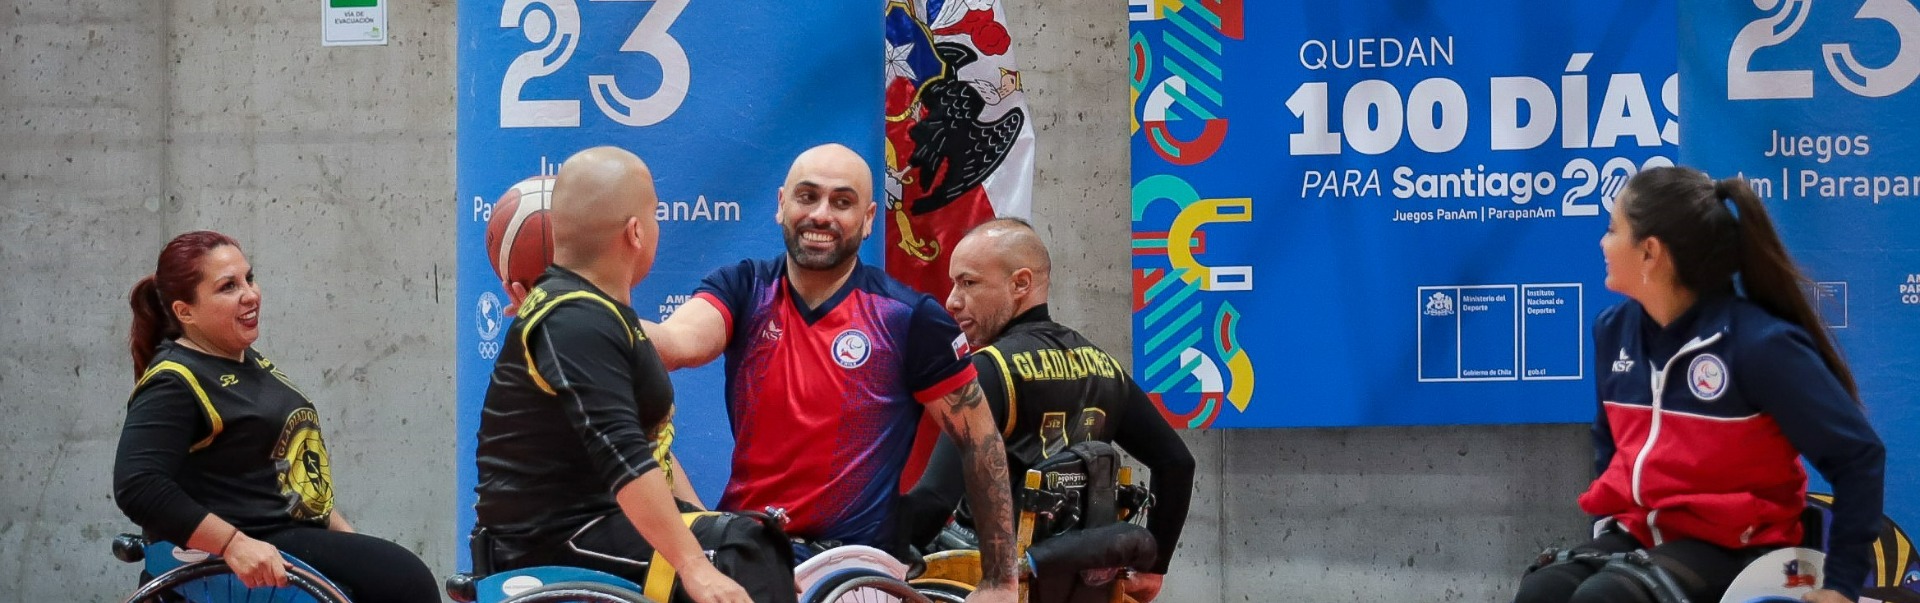 Sebastián Villavicencio juega baloncesto en silla de ruedas en el marco de los 100 días. Foto: Santiago 2023.